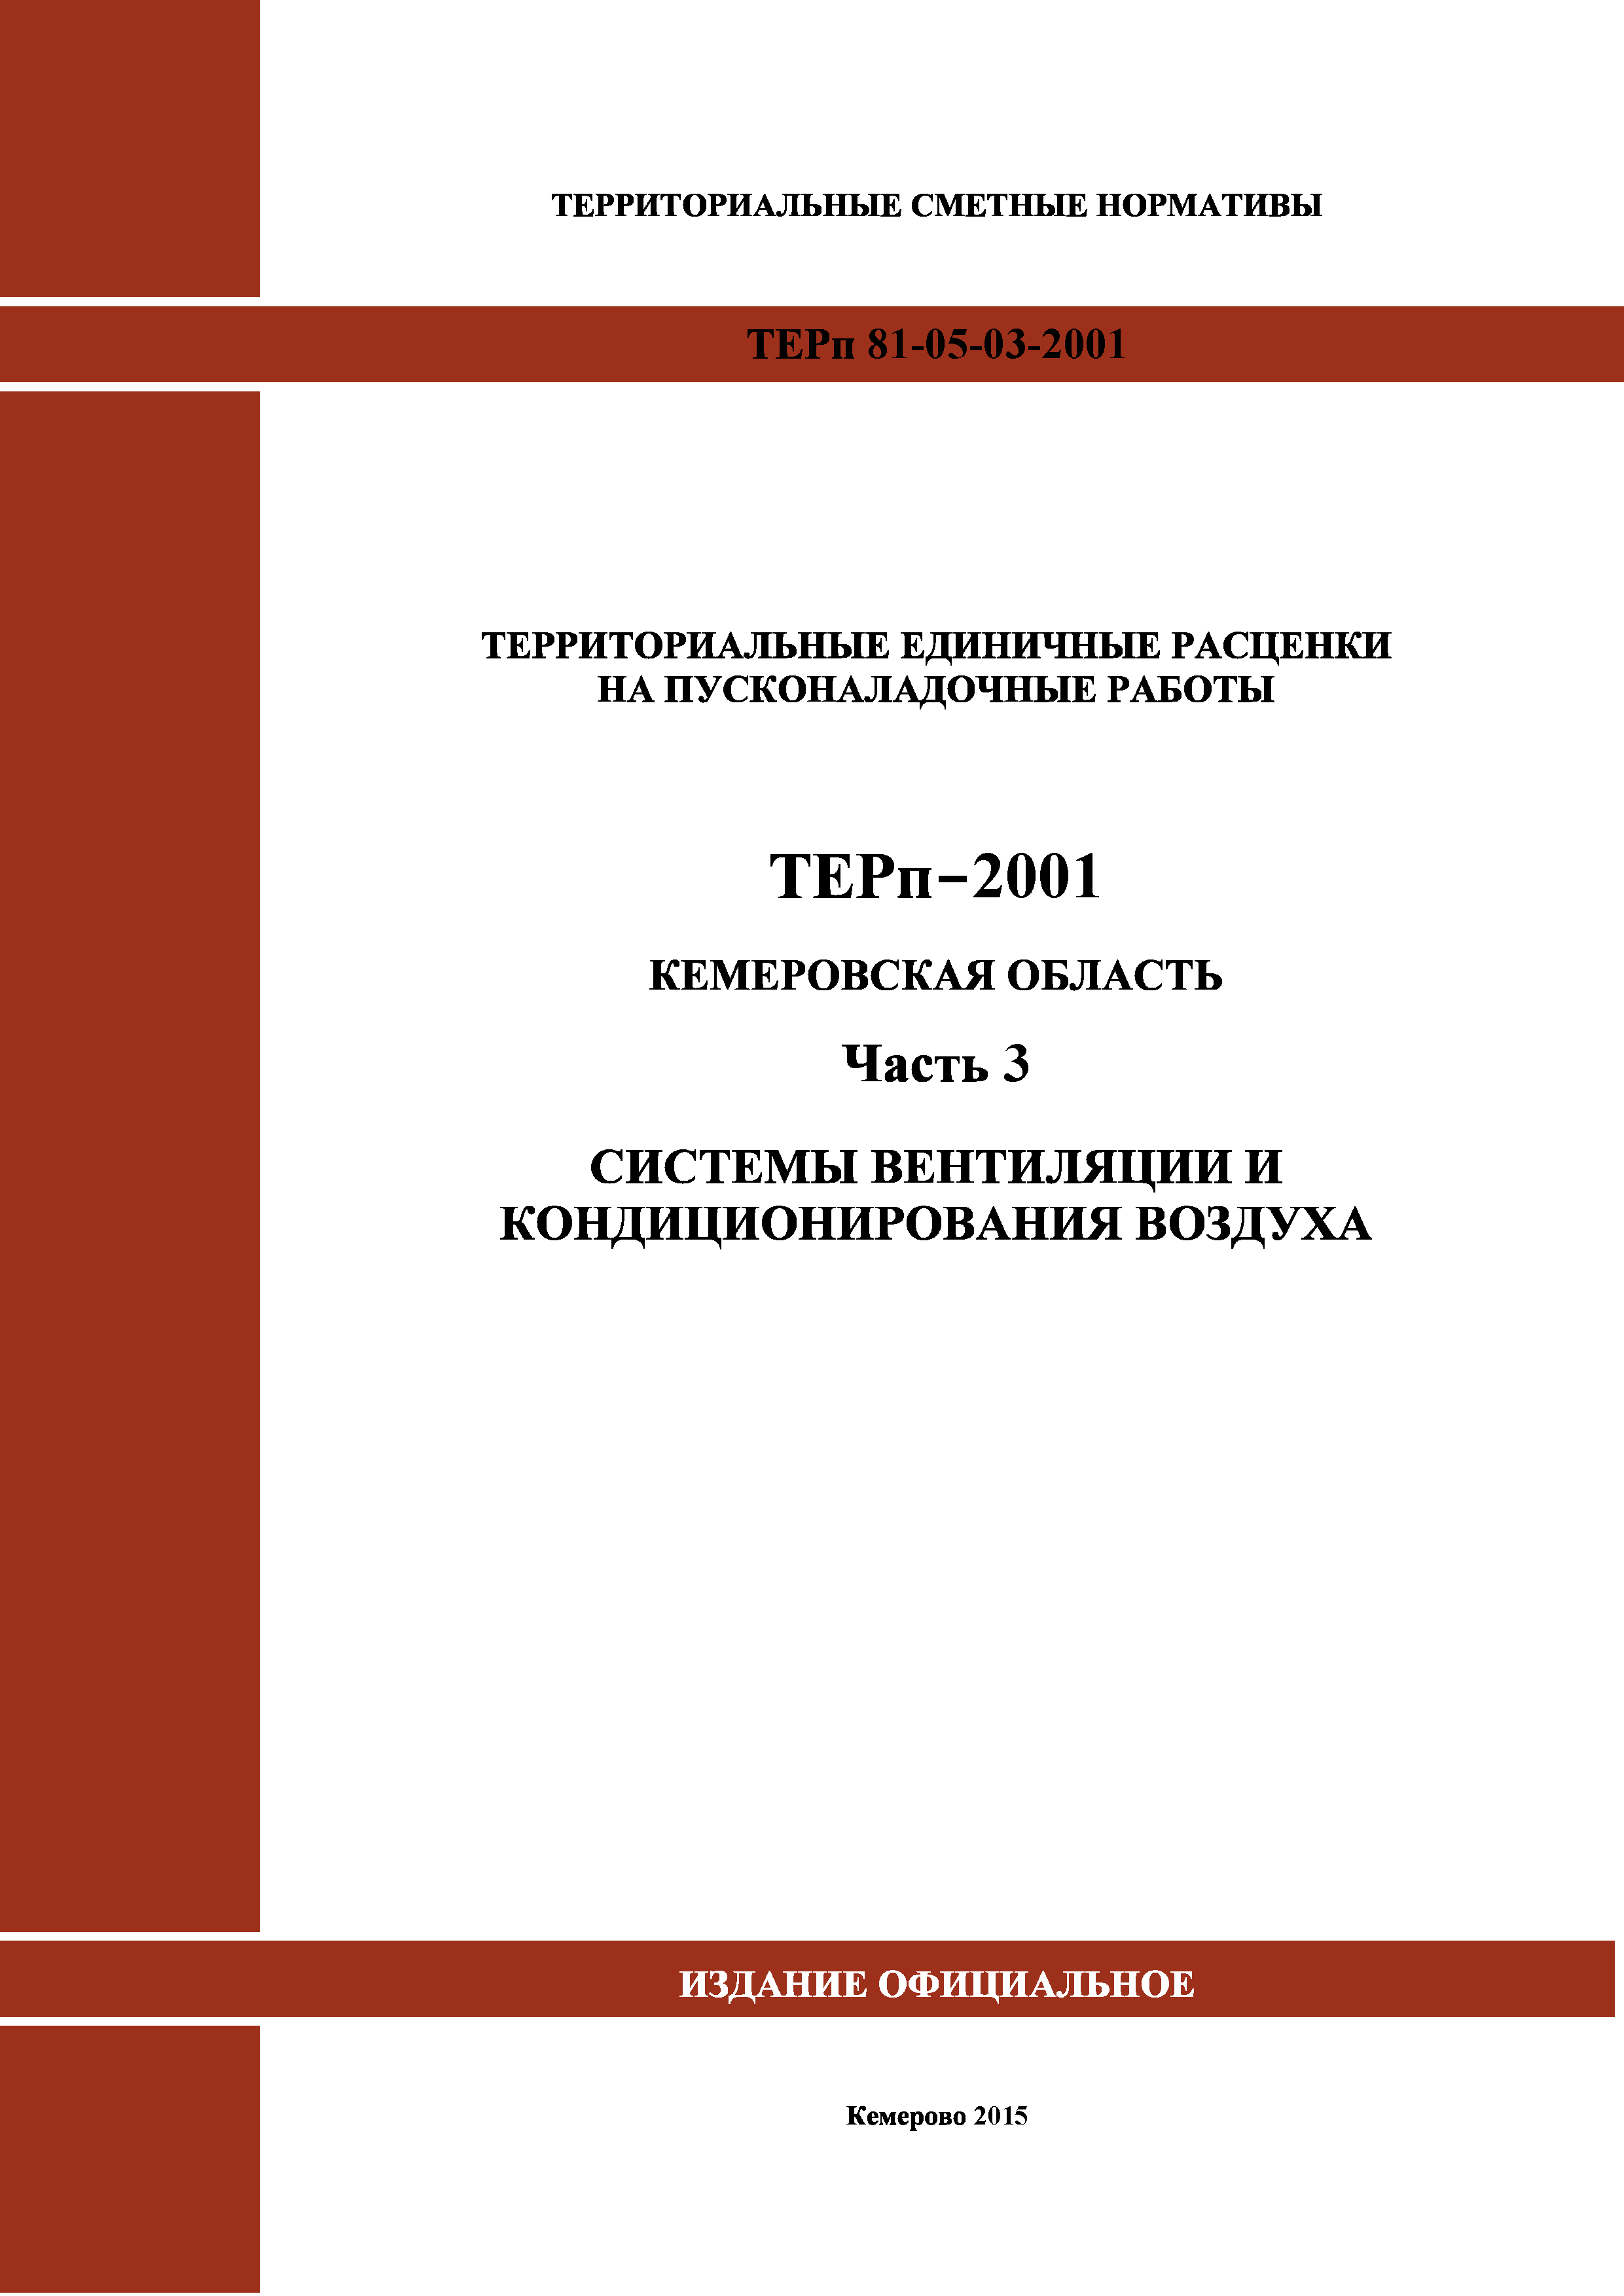 ТЕРп Кемеровская область 81-05-03-2001